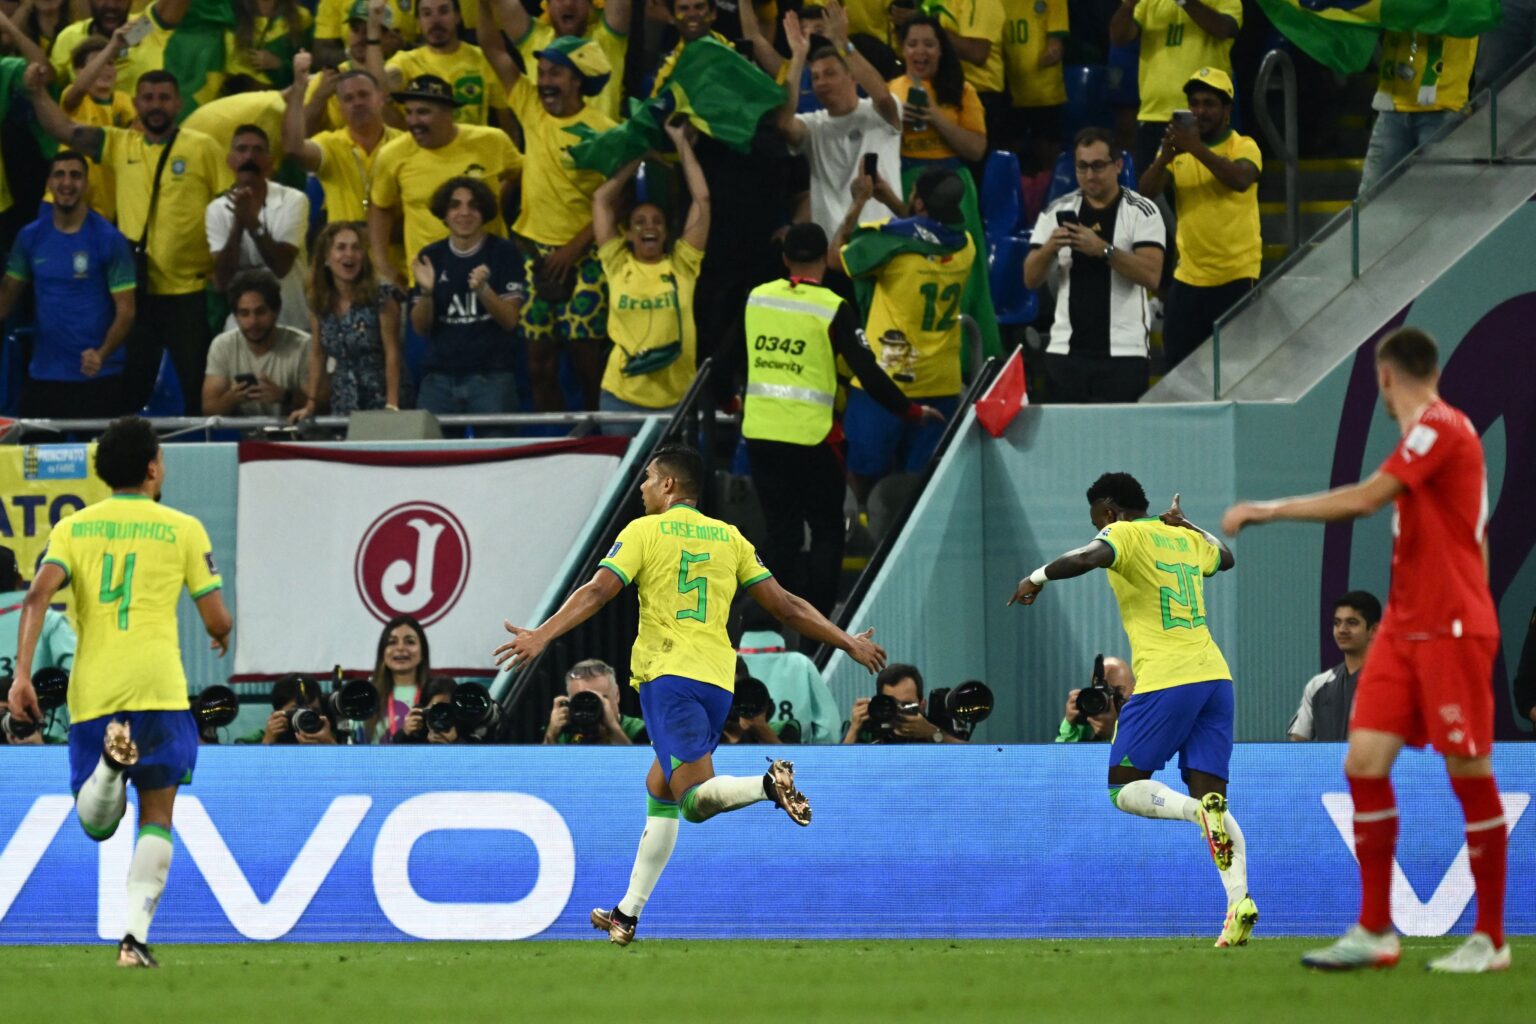 البرازيل تتاهل لدور الثمانية على حساب سويسرا والاراغوي تسقط أمام البرتغال